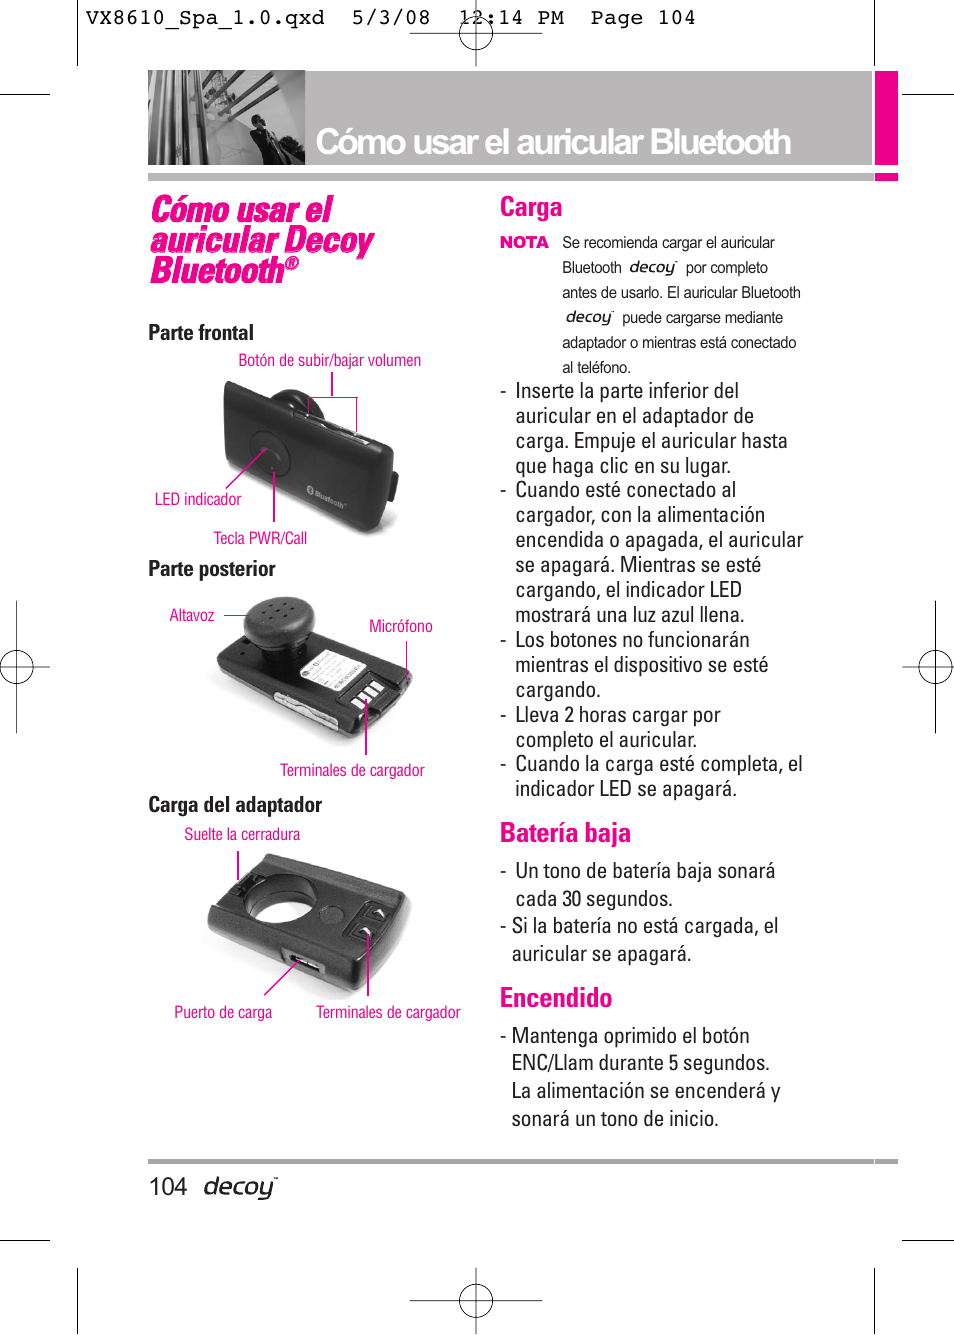 Cómo usar el auricular bluetooth | LG LGVX8610LK Manual del usuario | Página 104 / 149